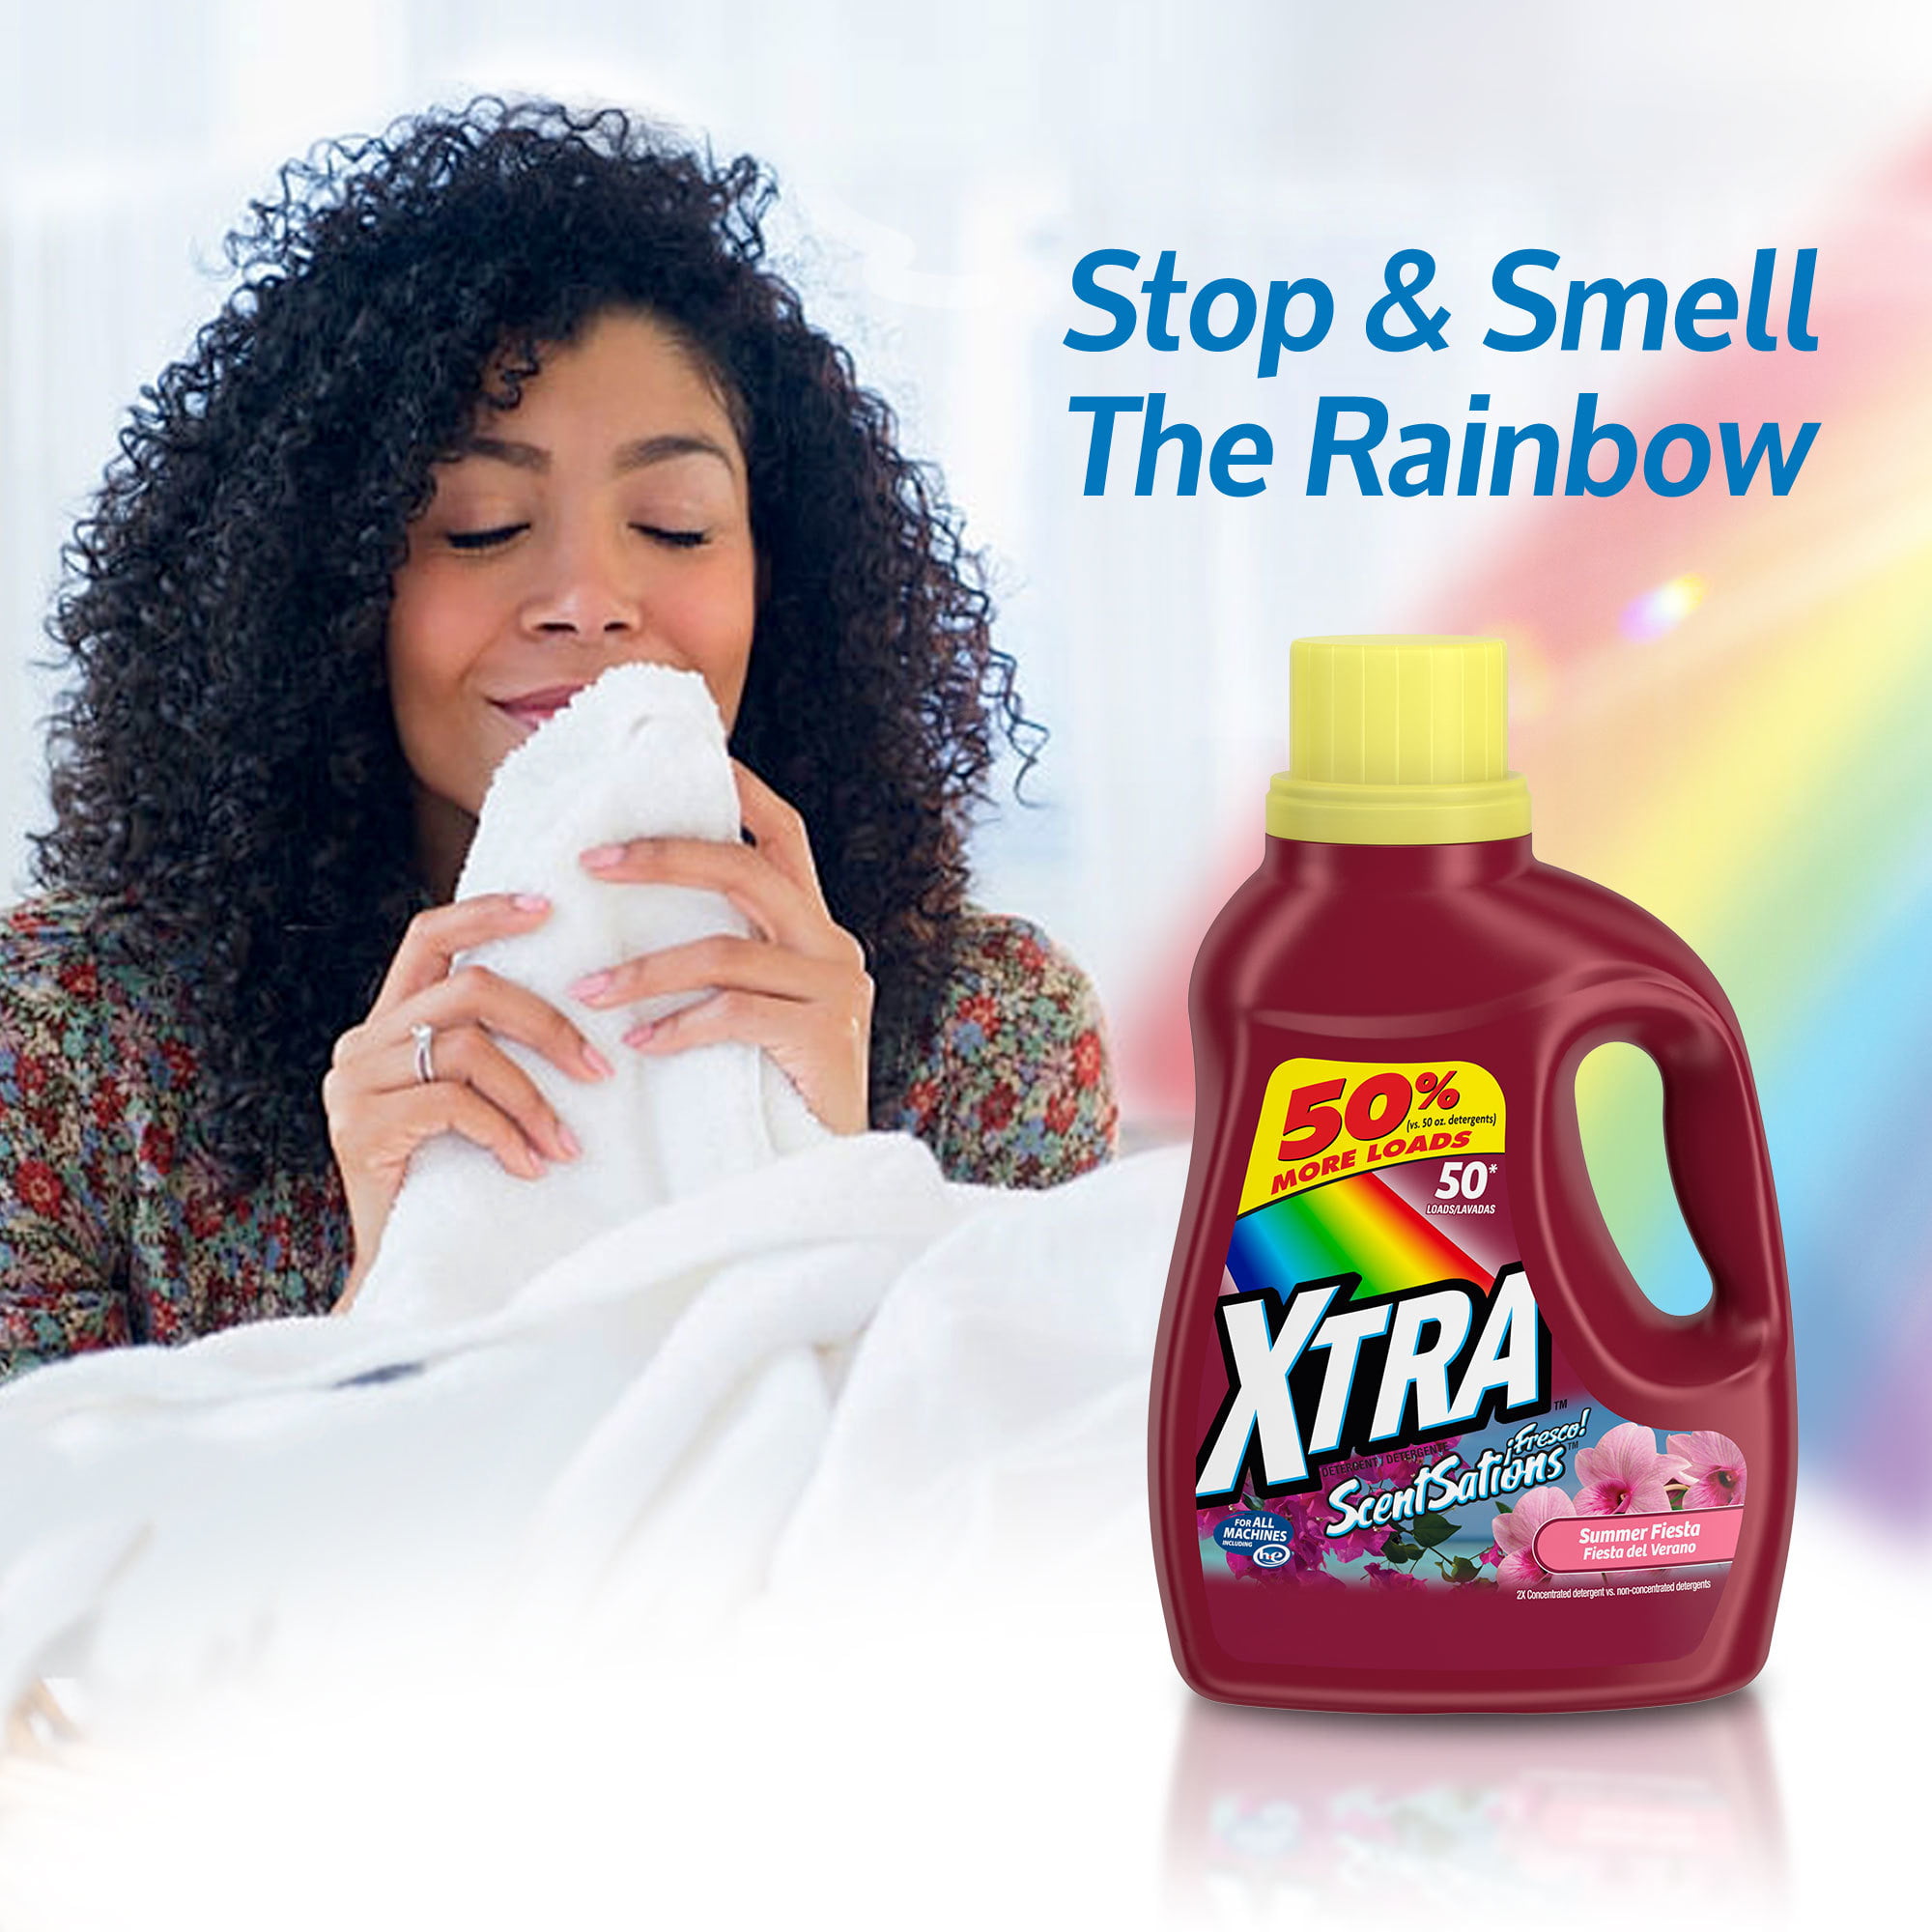 XTRA™ Summer Fiesta Liquid Detergent